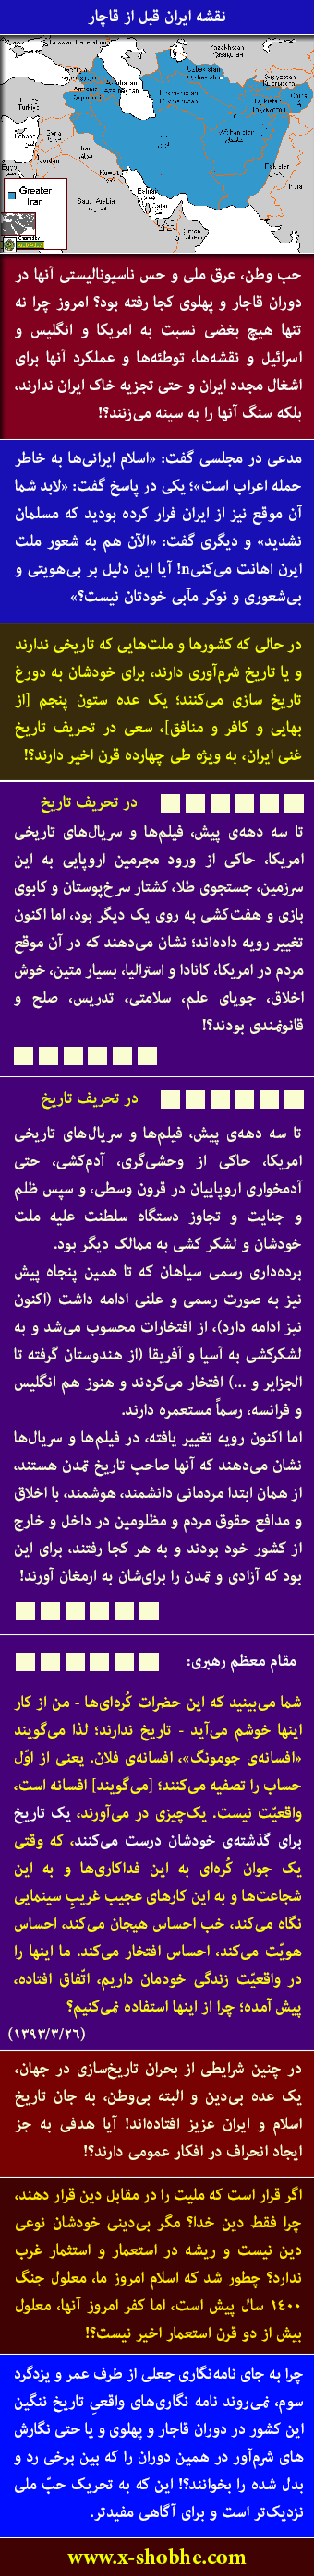 اخیرا نامه عمر و پاسخ پادشاه ایران در فضای مجازی ترویج شده؛ لطفا در خصوص سندیت این نامه و پاسخ آن صحبت کنید. (حوزوی / تهران)